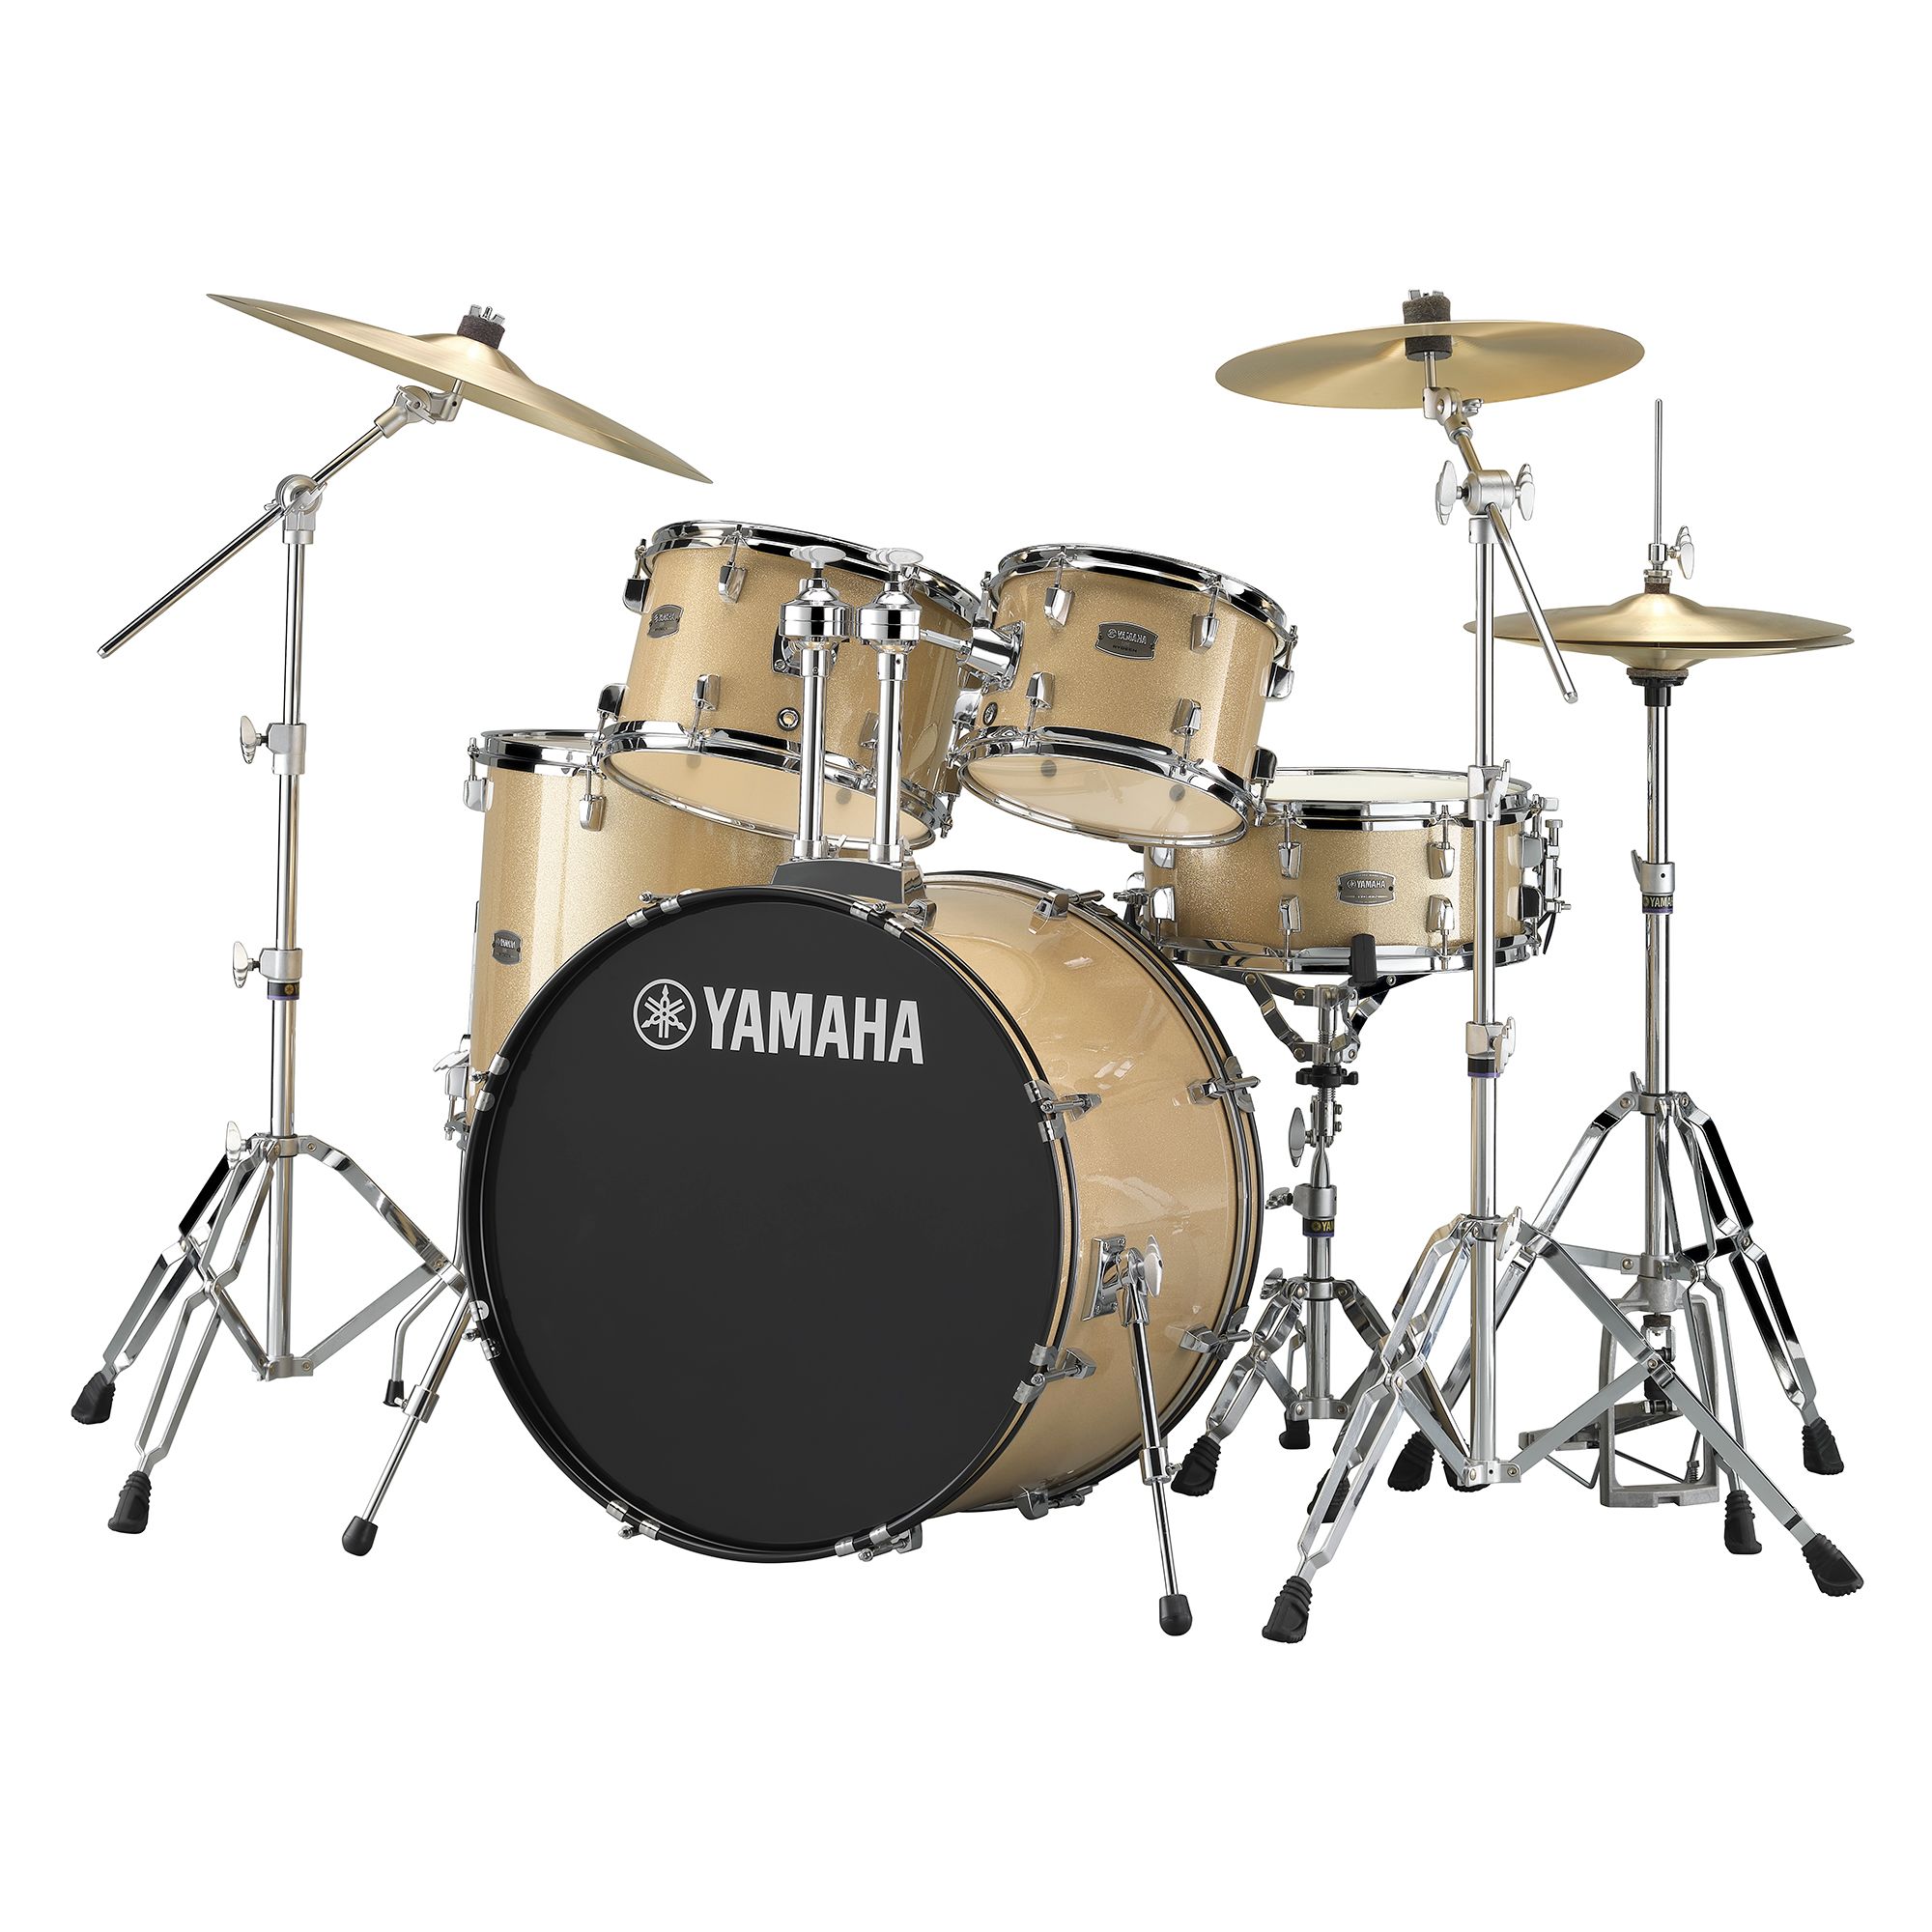 鼓組介紹- 傳統鼓- 鼓樂器- 樂器- 產品- Yamaha - 台灣